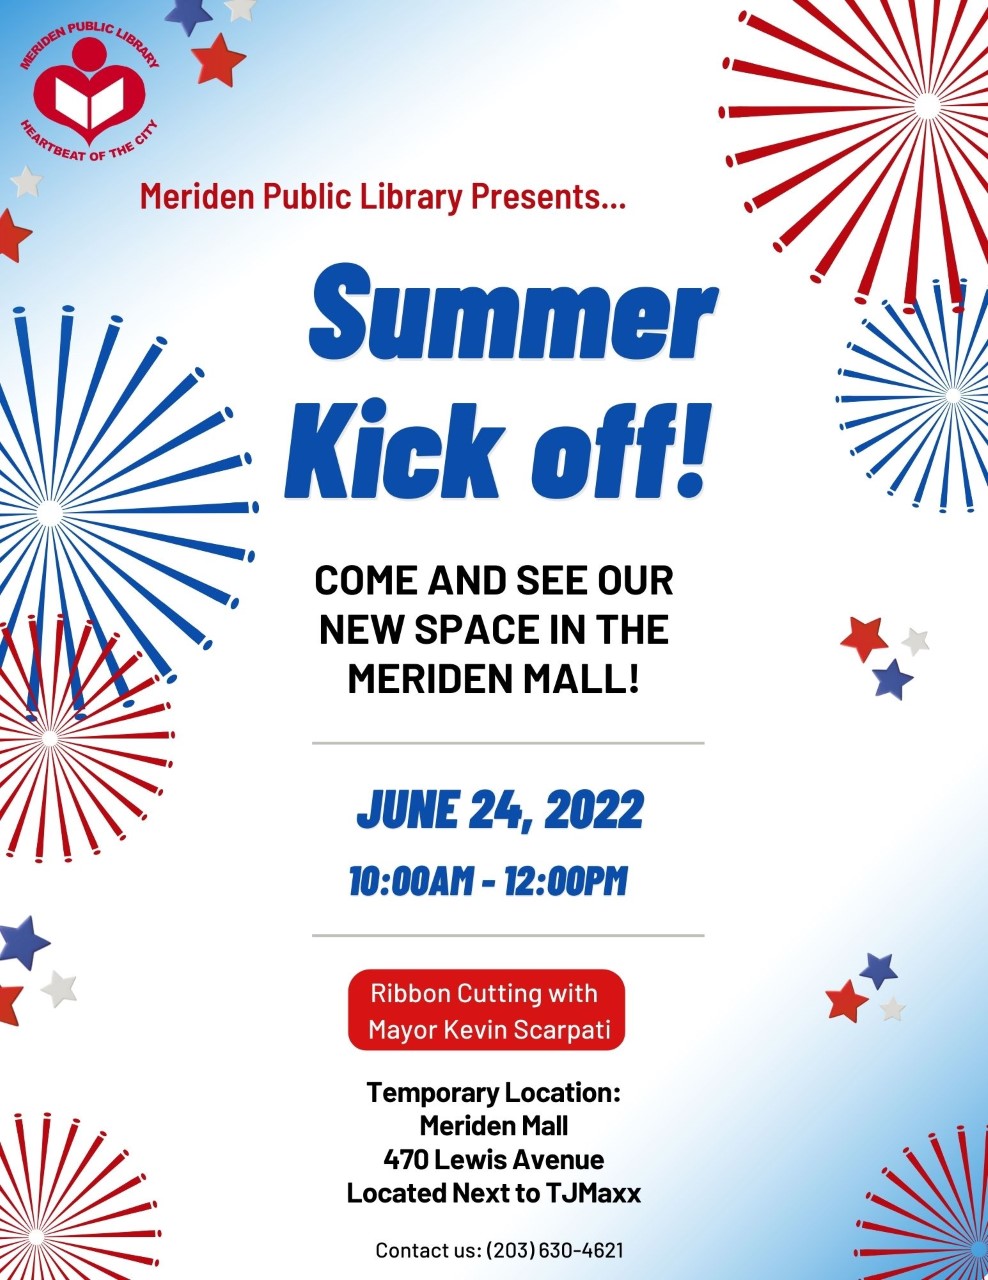 Meriden Public Library - Summer Kick Off!